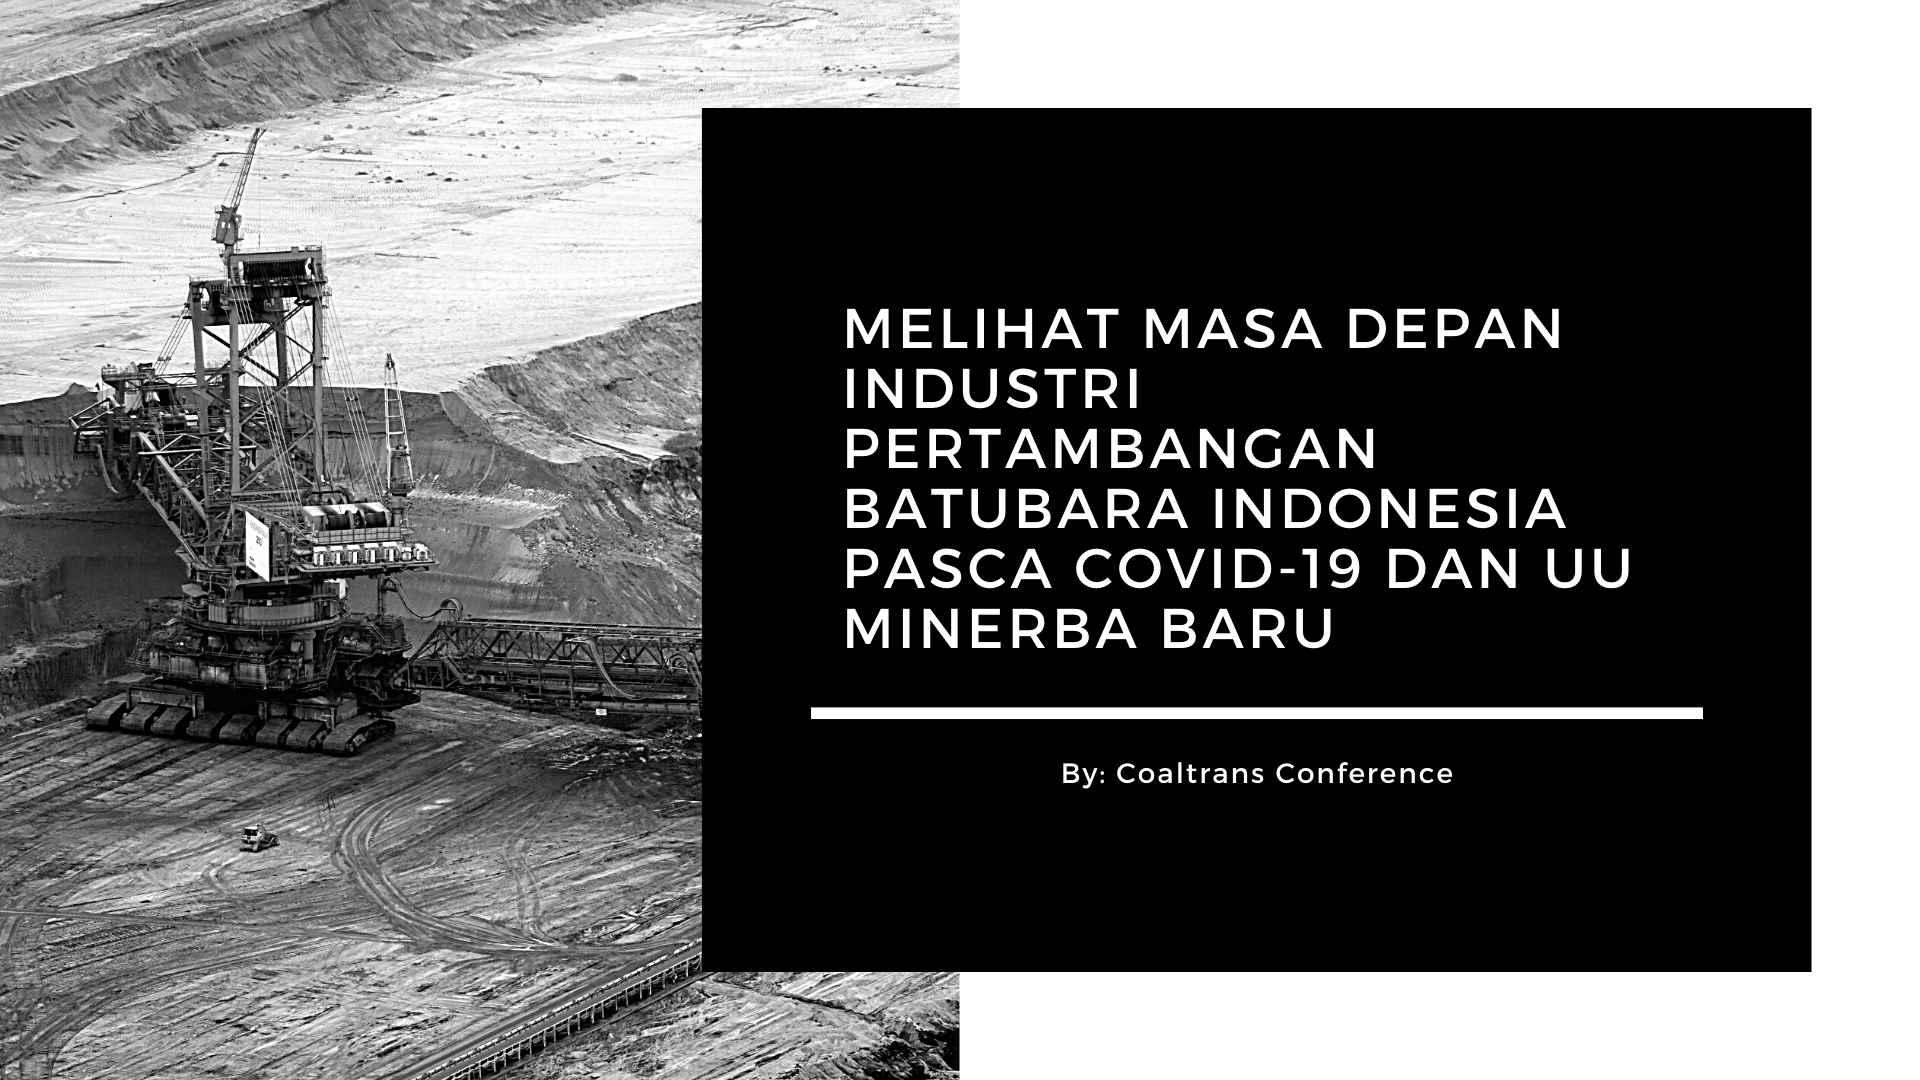 Melihat Masa Depan Industri Pertambangan Batubara Indonesia Pasca Covid-19 dan UU Minerba Baru